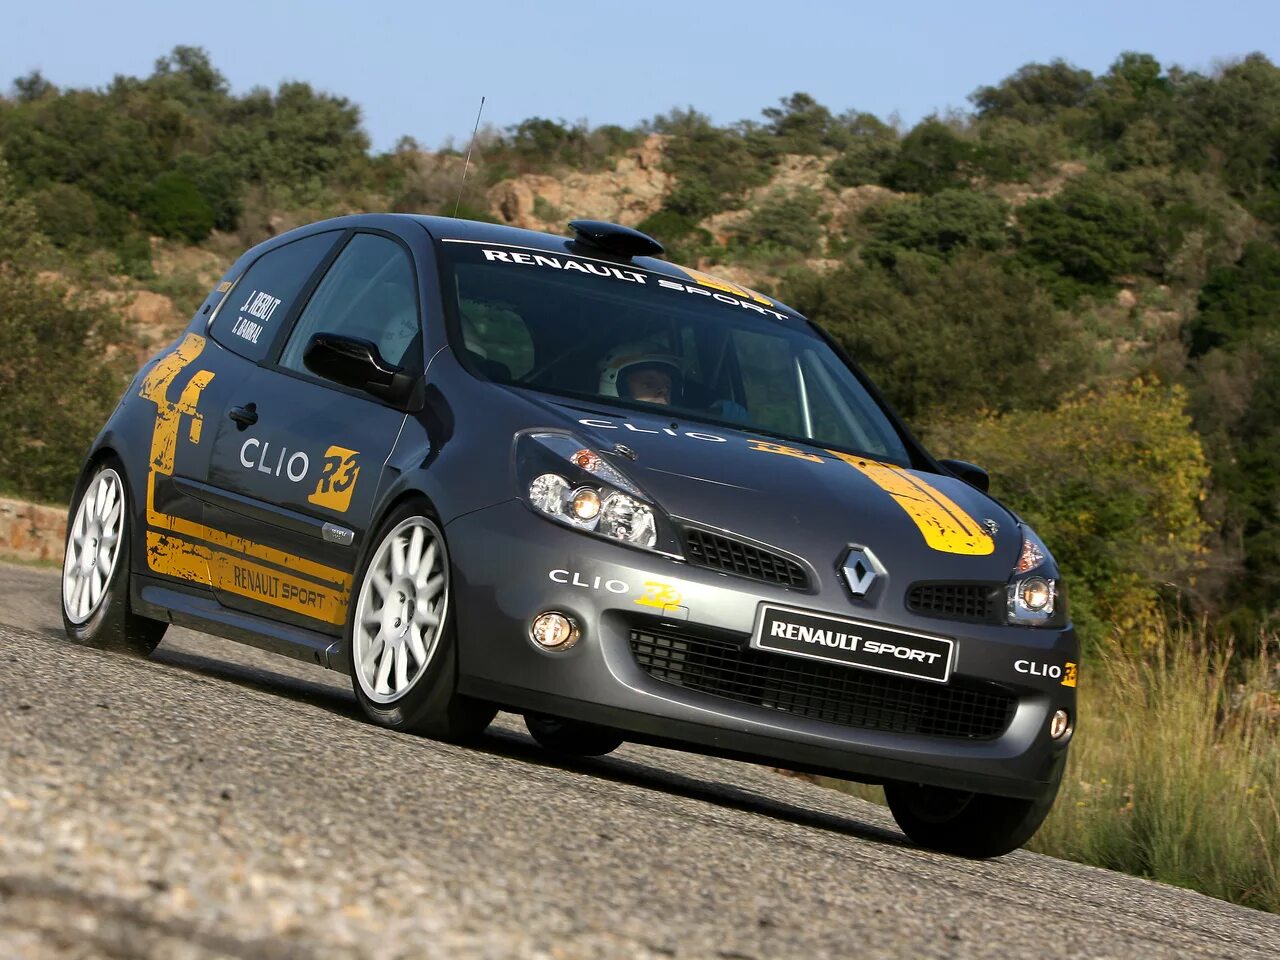 Петербург 2 рено. Рено Клиан. Рено Клио. Renault Clio RS 3. Renault Renault Clio 2.